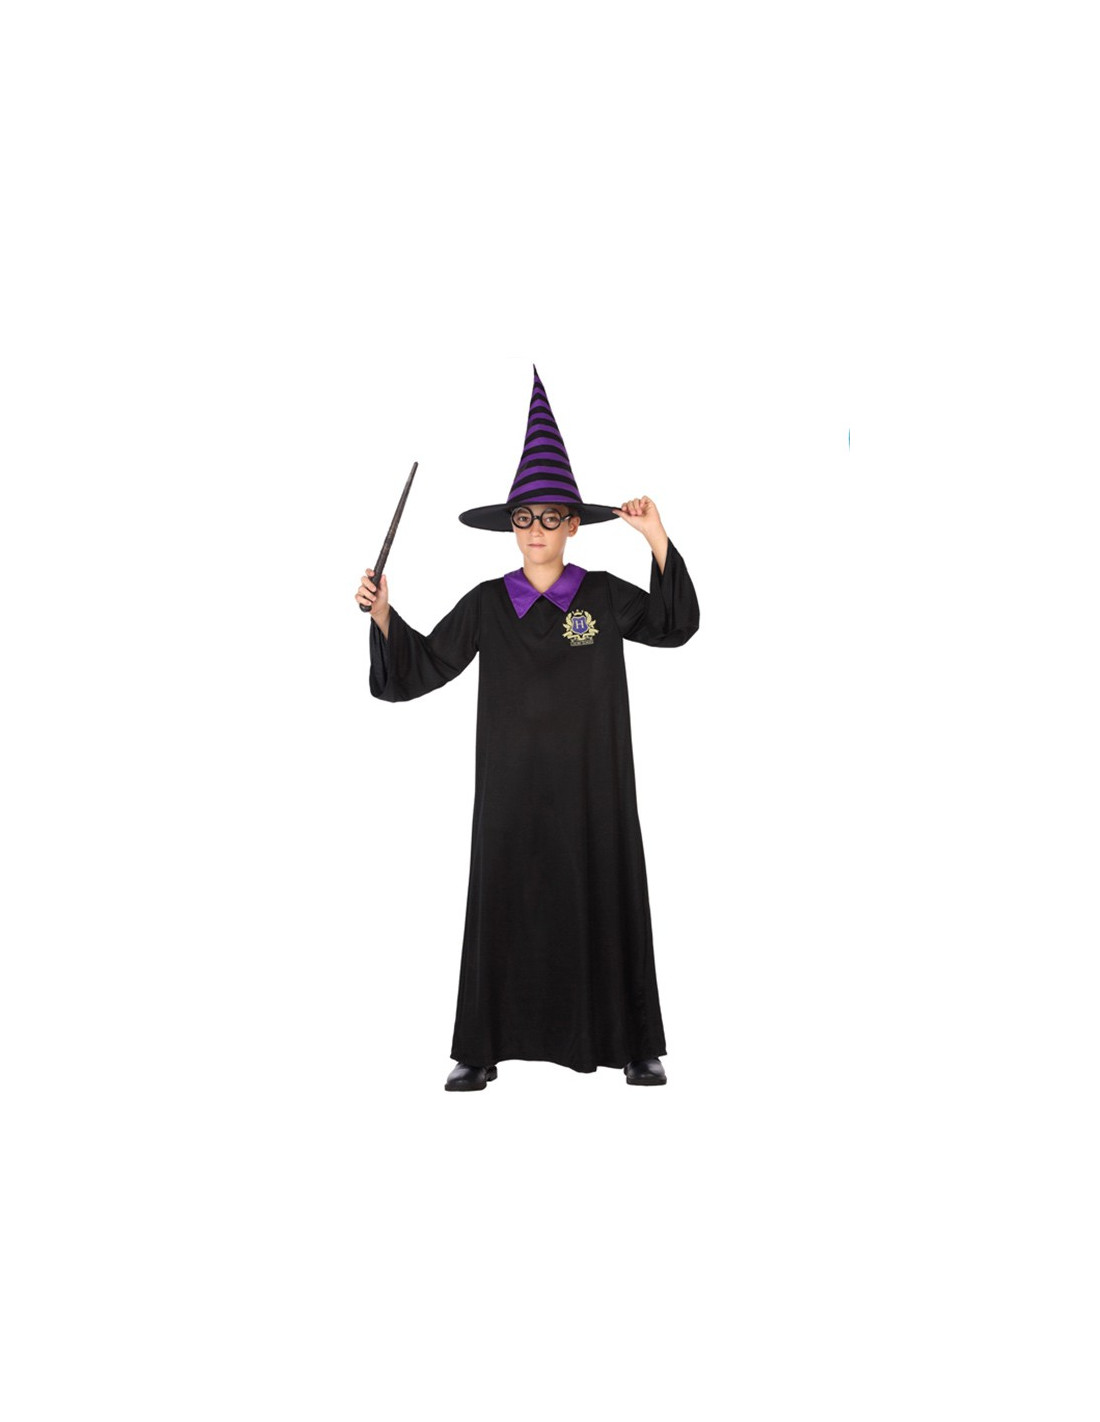 Costume d'Harry le magicien pour enfants